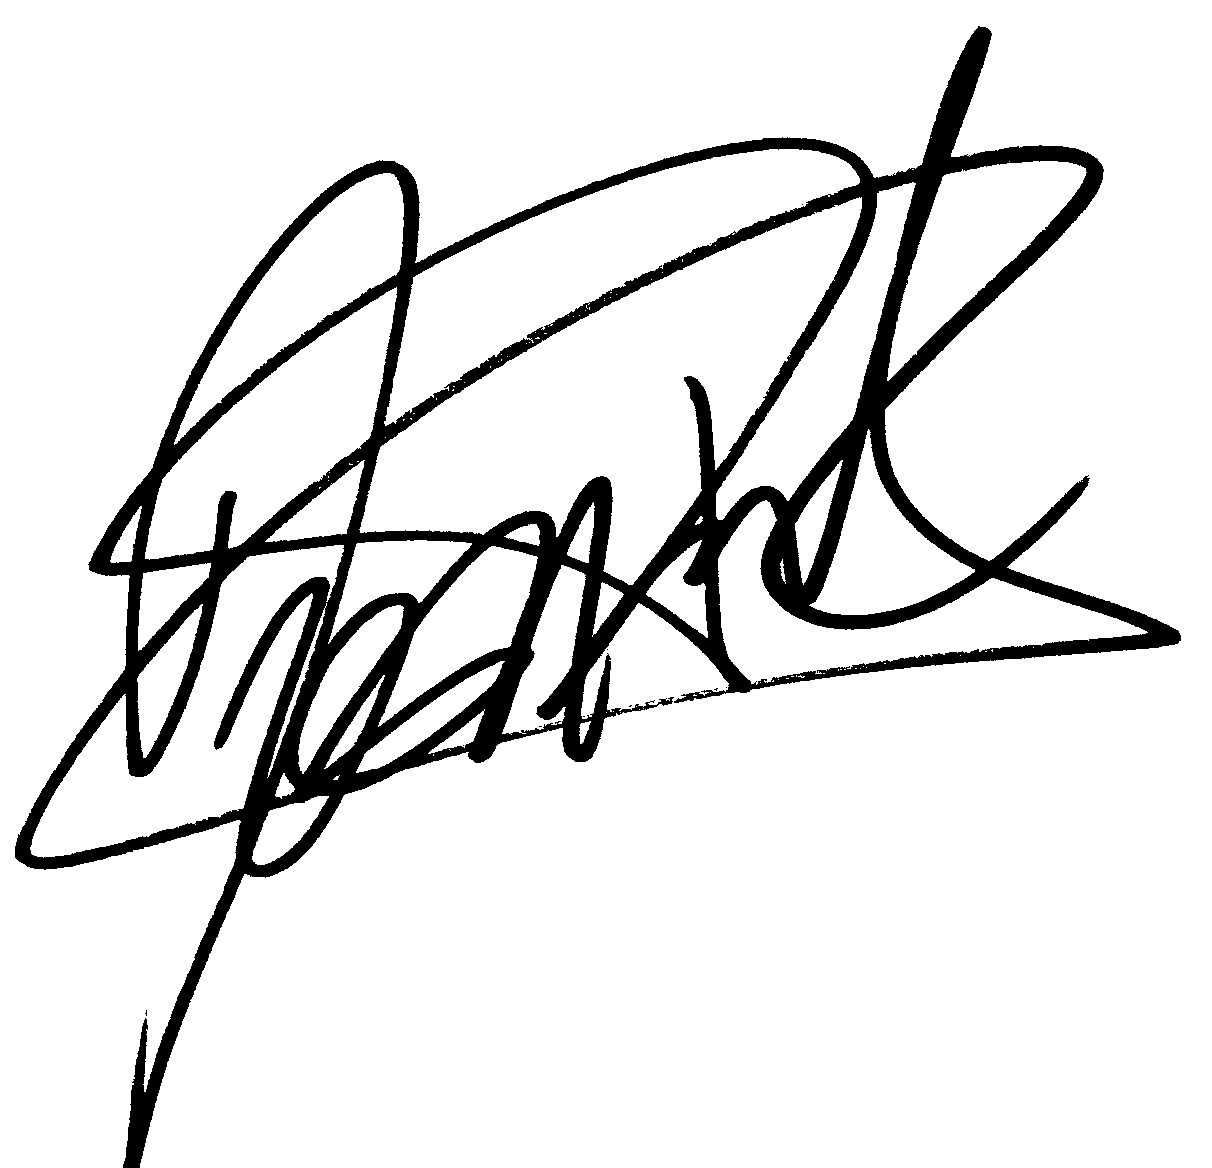 Jason Priestley autograph facsimile